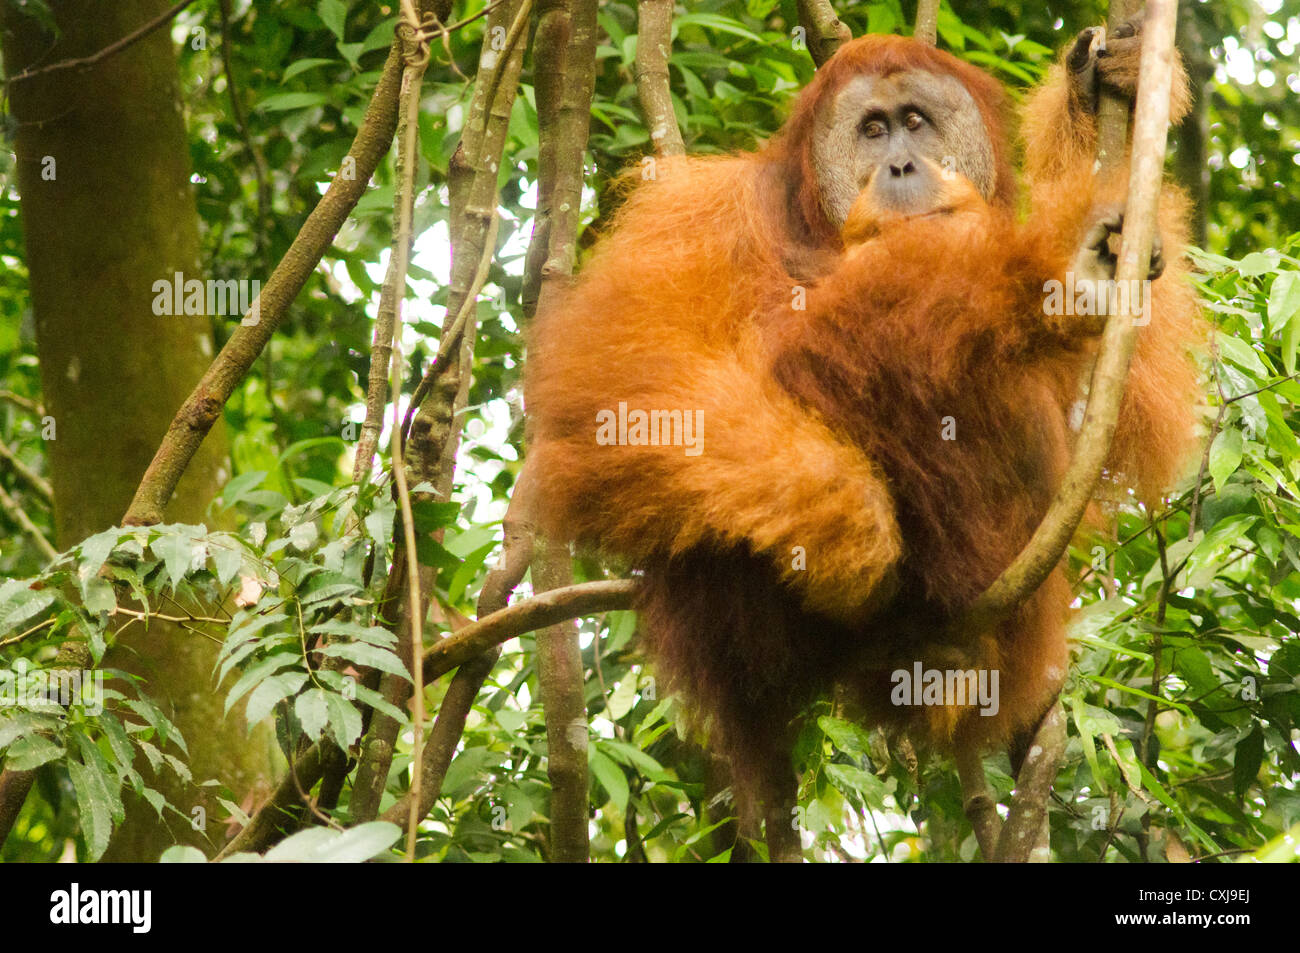 orang utan in the wild, photo taken at indonesia, bukit lawang of sumatra. Stock Photo